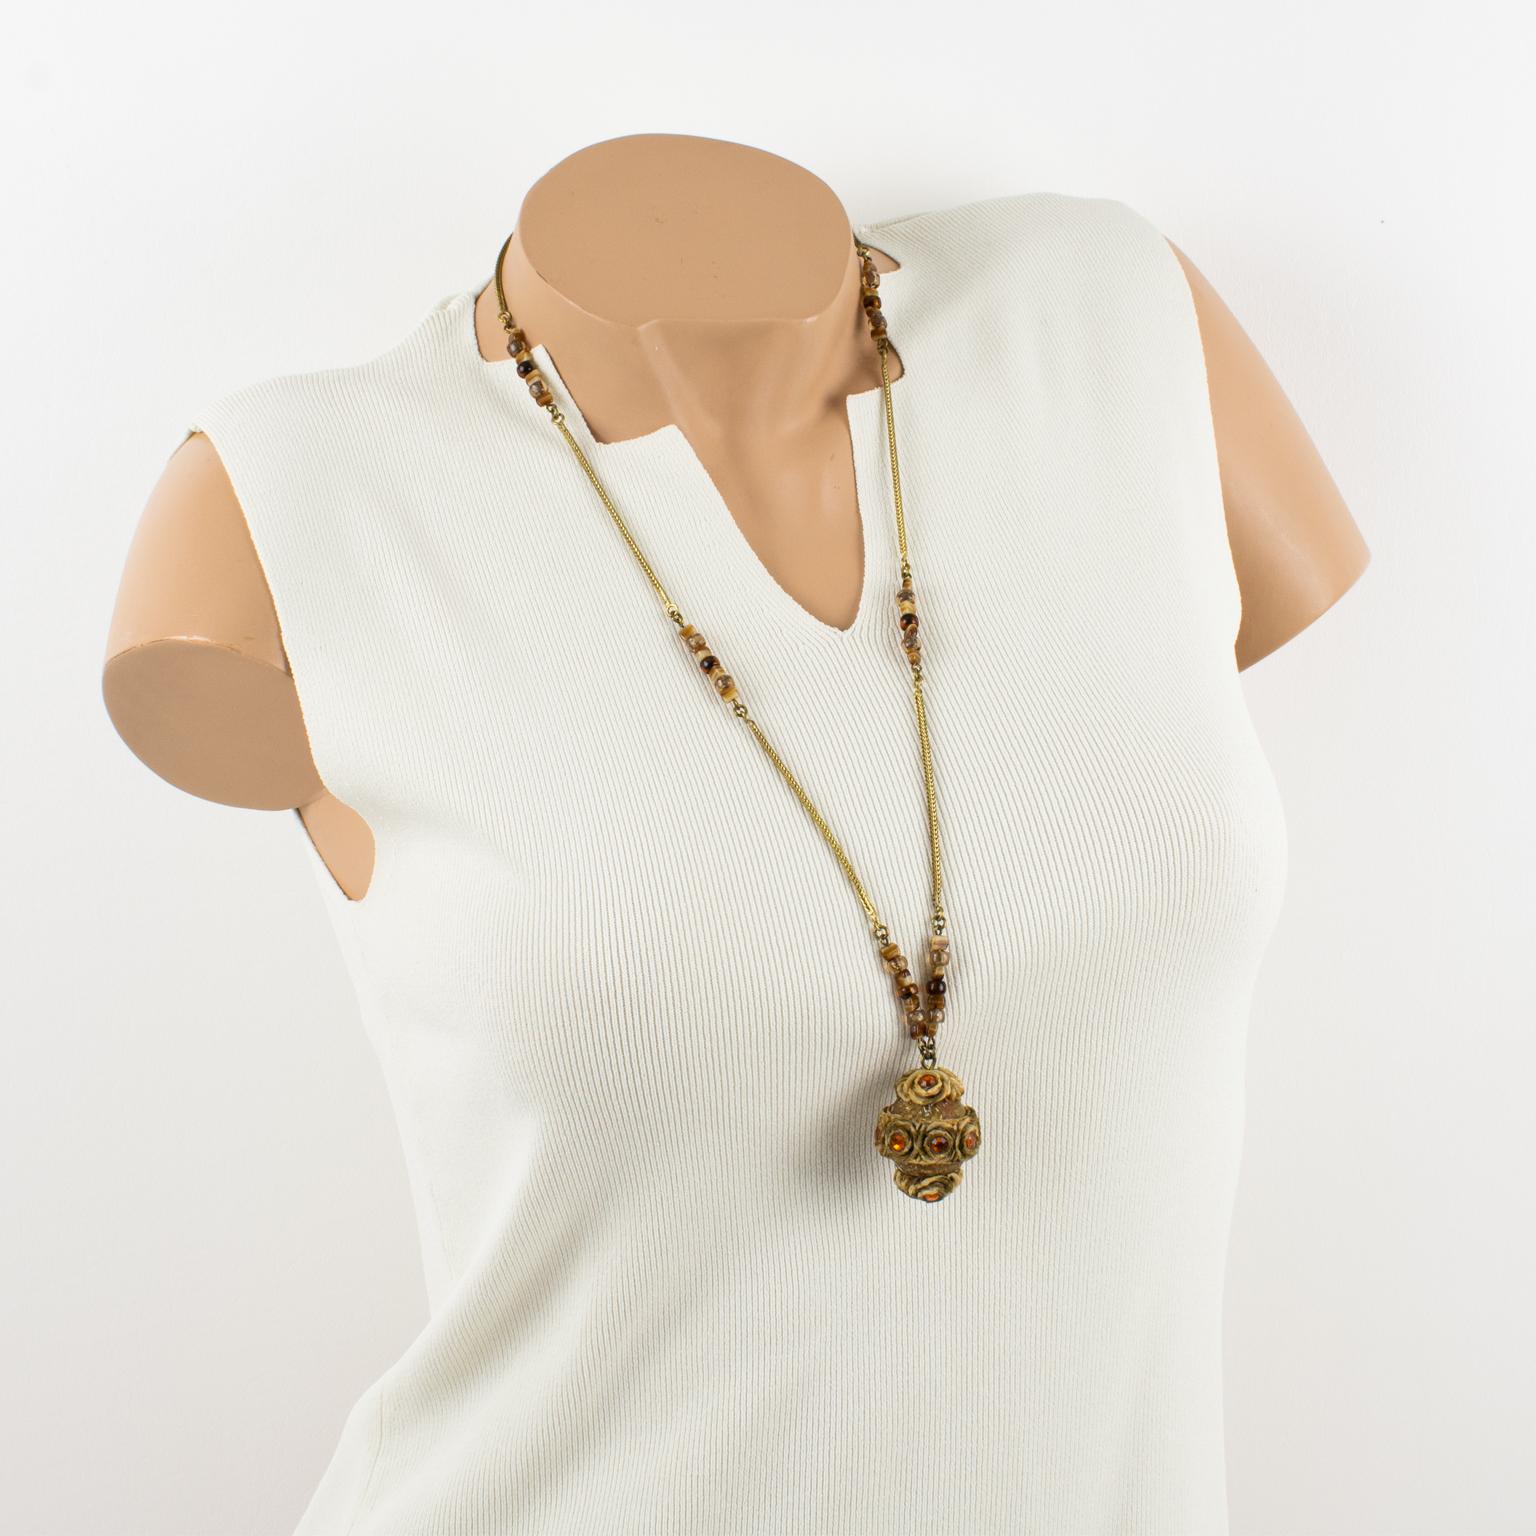 L'artiste joaillier français Henry Perichon (alias Henry) a conçu cet élégant collier en laiton et en résine Talosel dans les années 1960. Le long collier comporte un pendentif boule en résine Talosel marron-beige surmonté de strass à facettes en